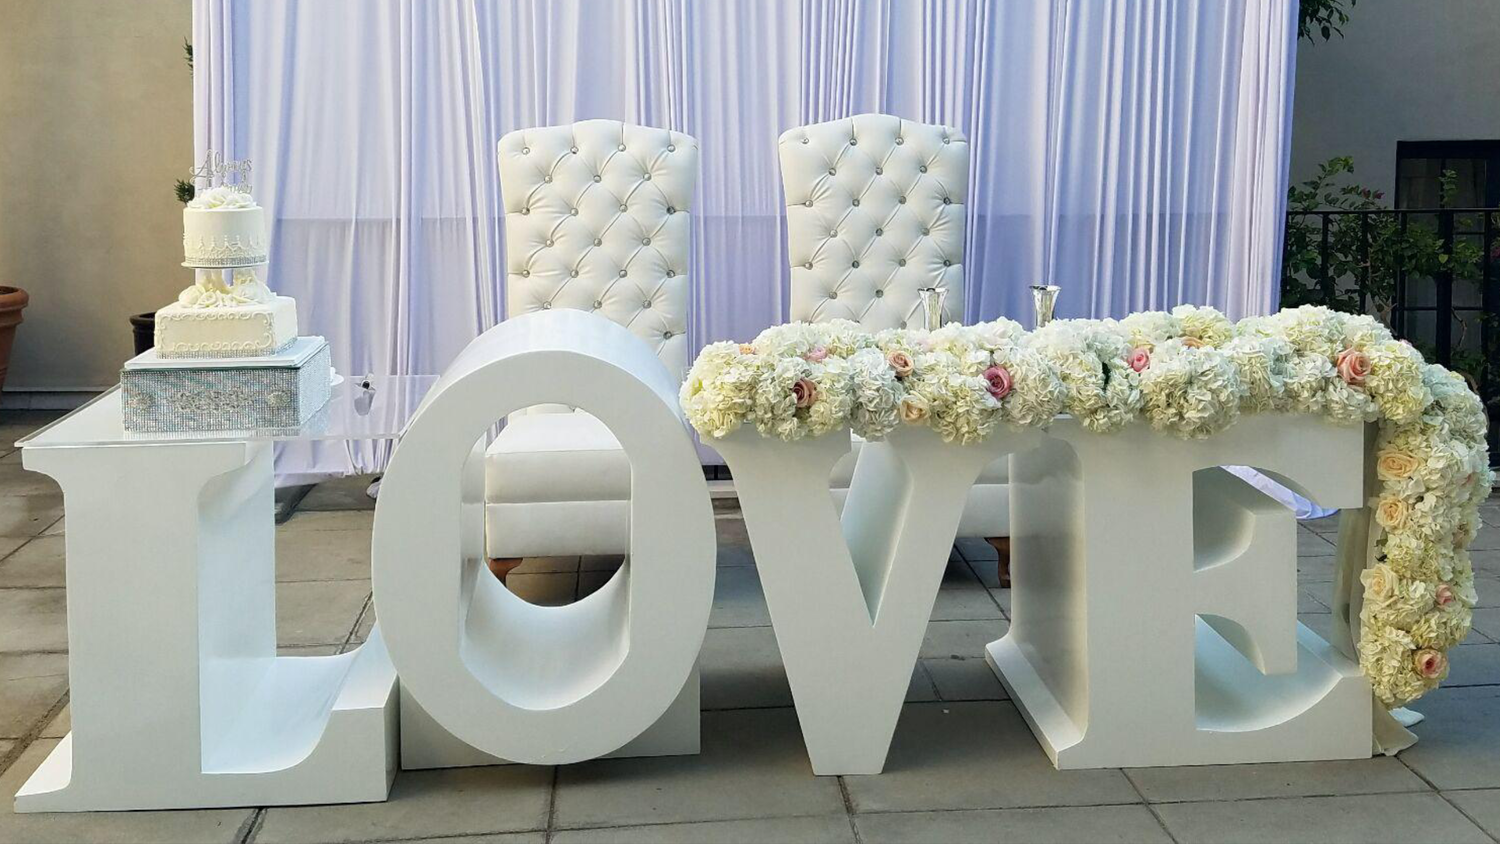 Буквы на свадьбу: интересные идеи для свадебной фотосессии и декора